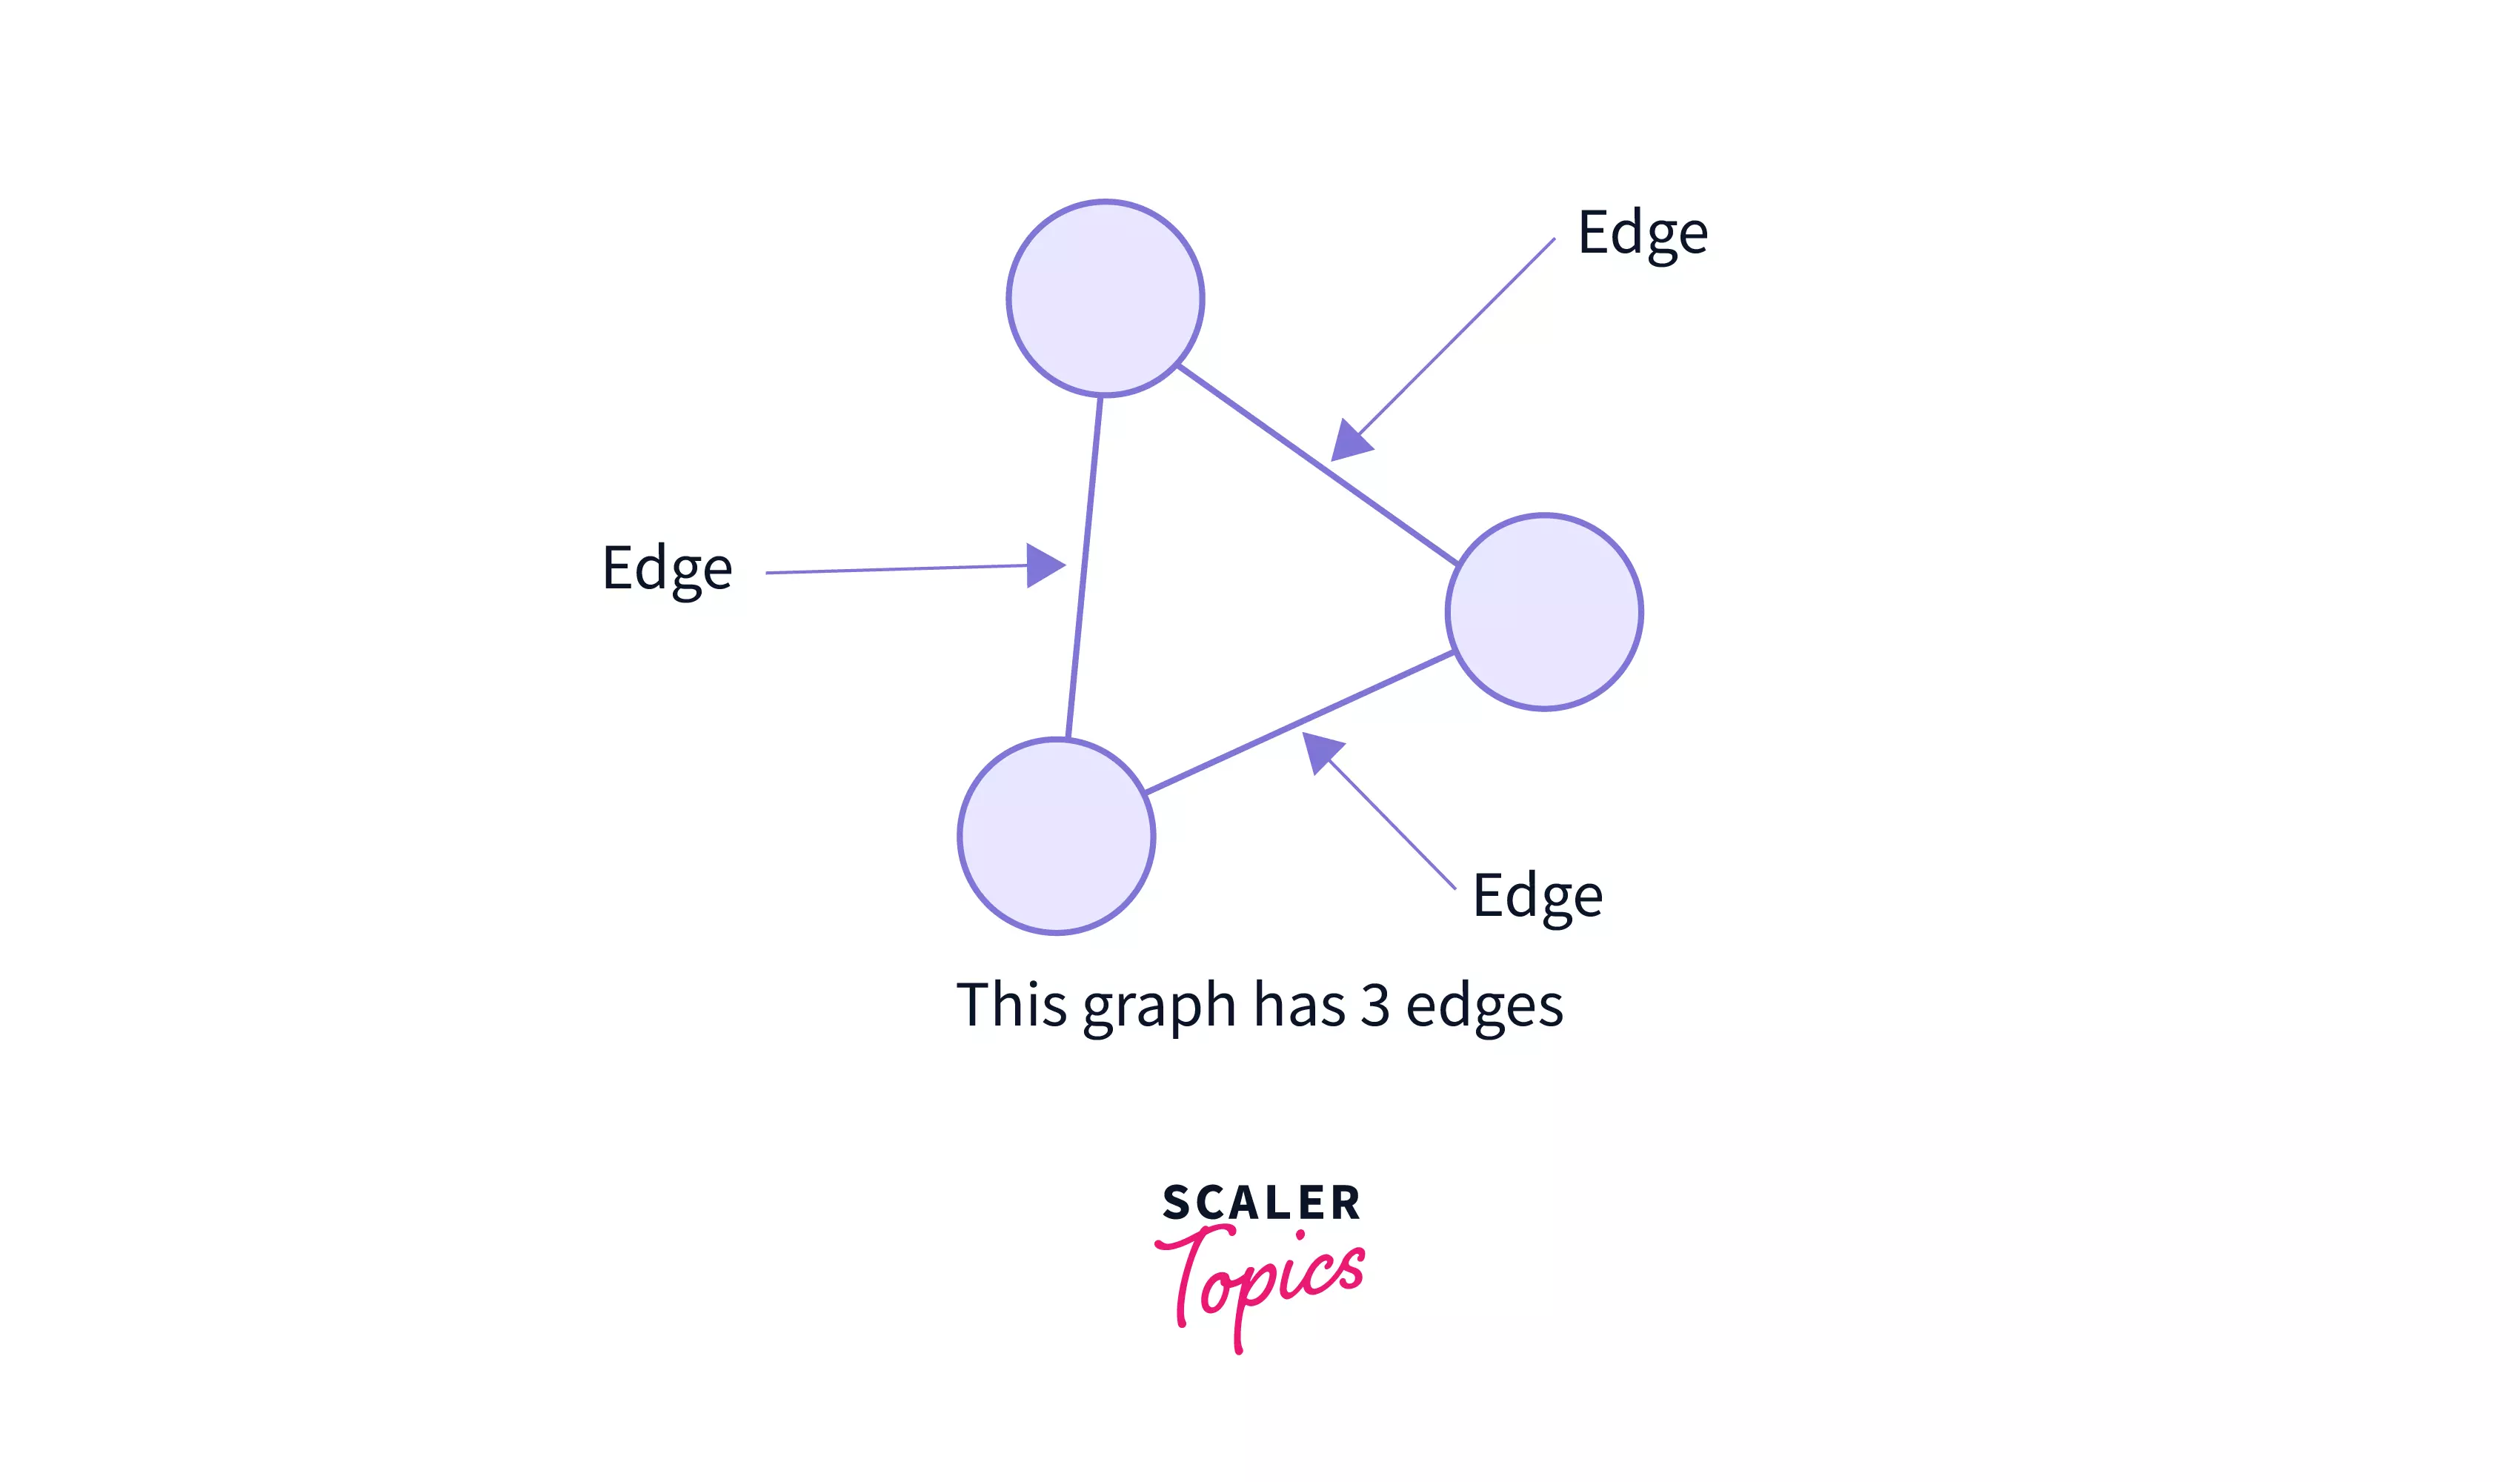 Edges in a graph